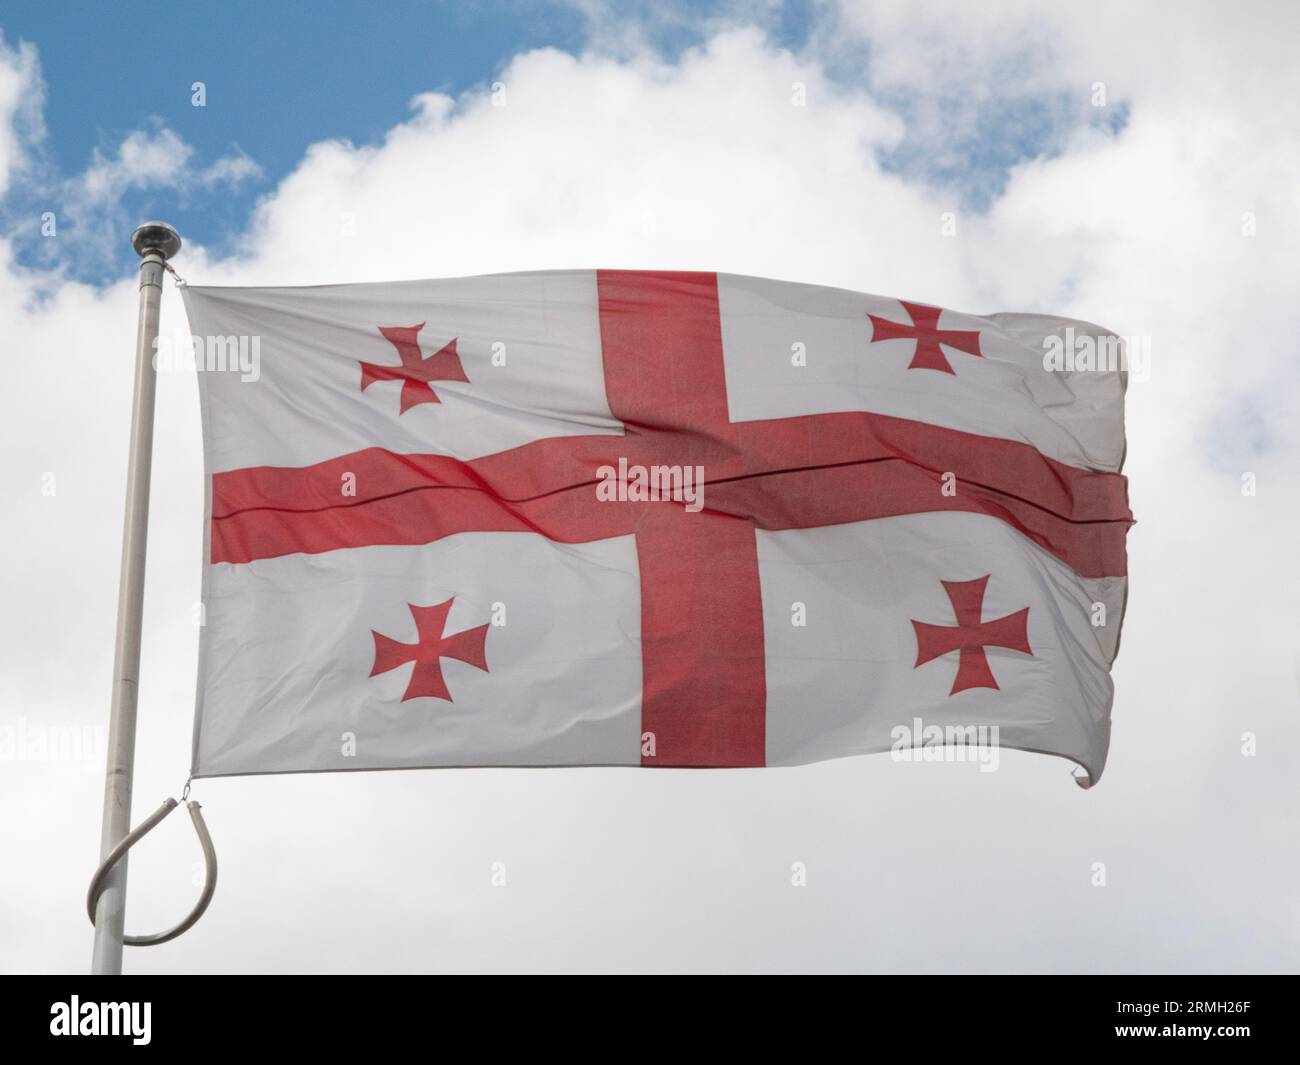 Le drapeau de la Géorgie, également connu sous le nom de drapeau à cinq croix, est l'un des symboles nationaux de la Géorgie agitant dans le vent d'un mât de drapeau. Banque D'Images